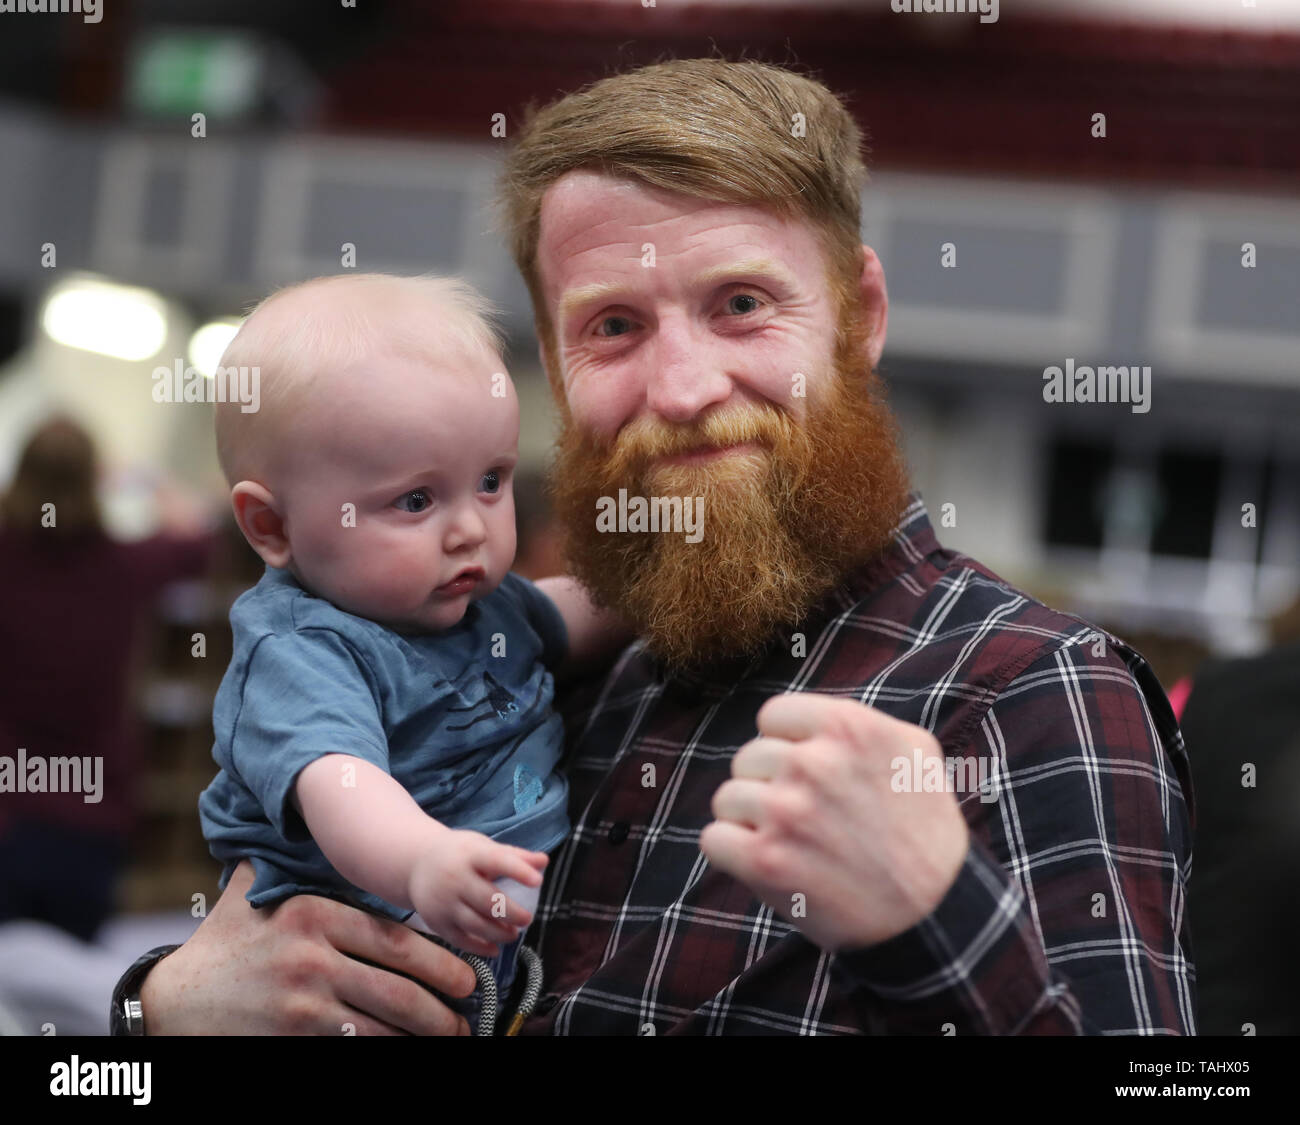 Sinn Fein e candidati ex MMA fighter Paddy "Hooligan" Holohan con suo figlio Seamus come il conteggio continua nelle elezioni locali di City West convention center a Dublino. Foto Stock